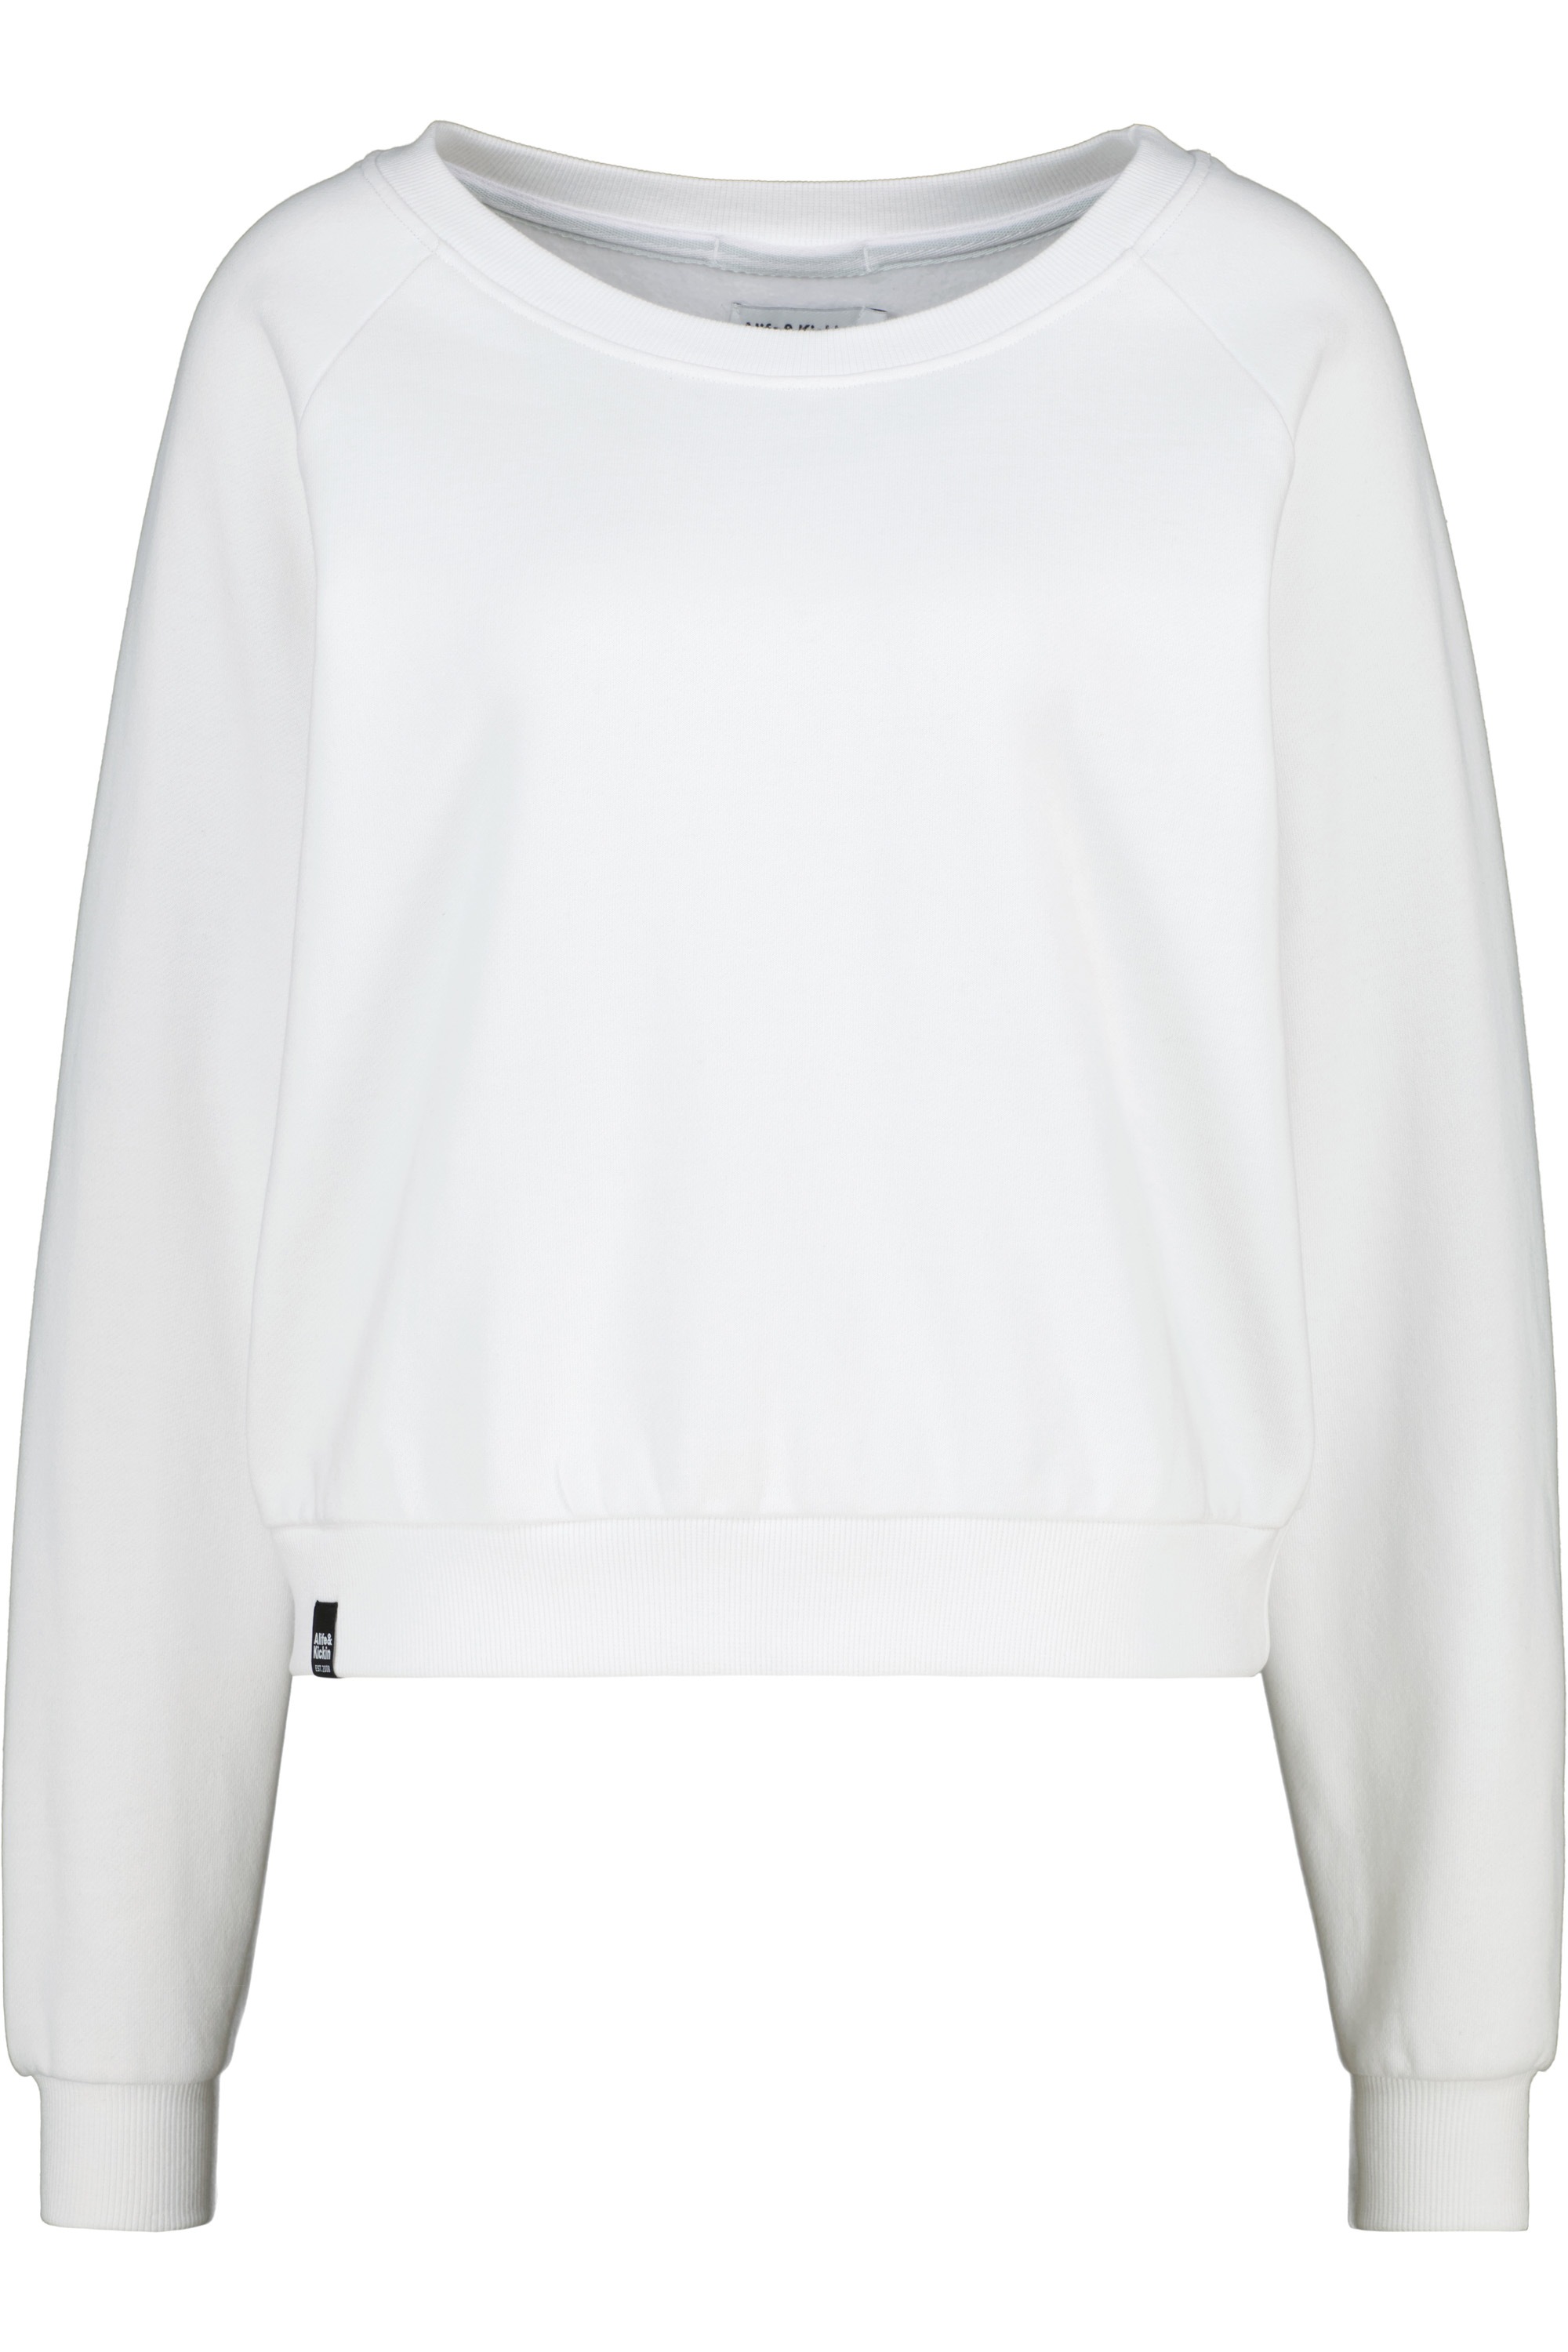 Alife & Kickin Sweatshirt »TeonaAK A Oversize Sweatshirt Damen Rundhalspullover, Sweatshirt«